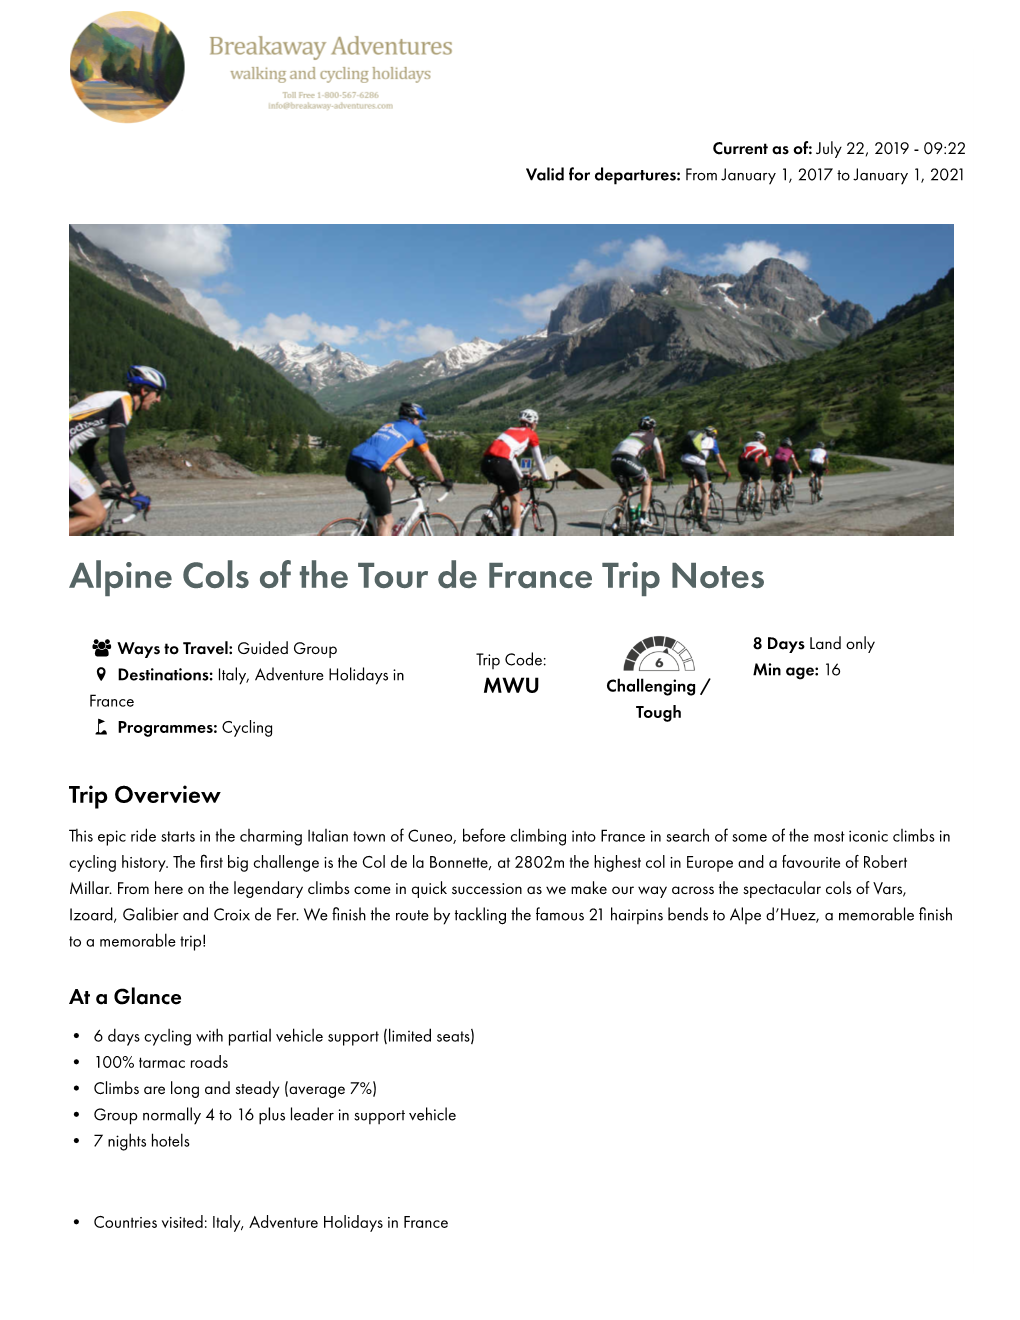 Alpine Cols of the Tour De France Trip Notes